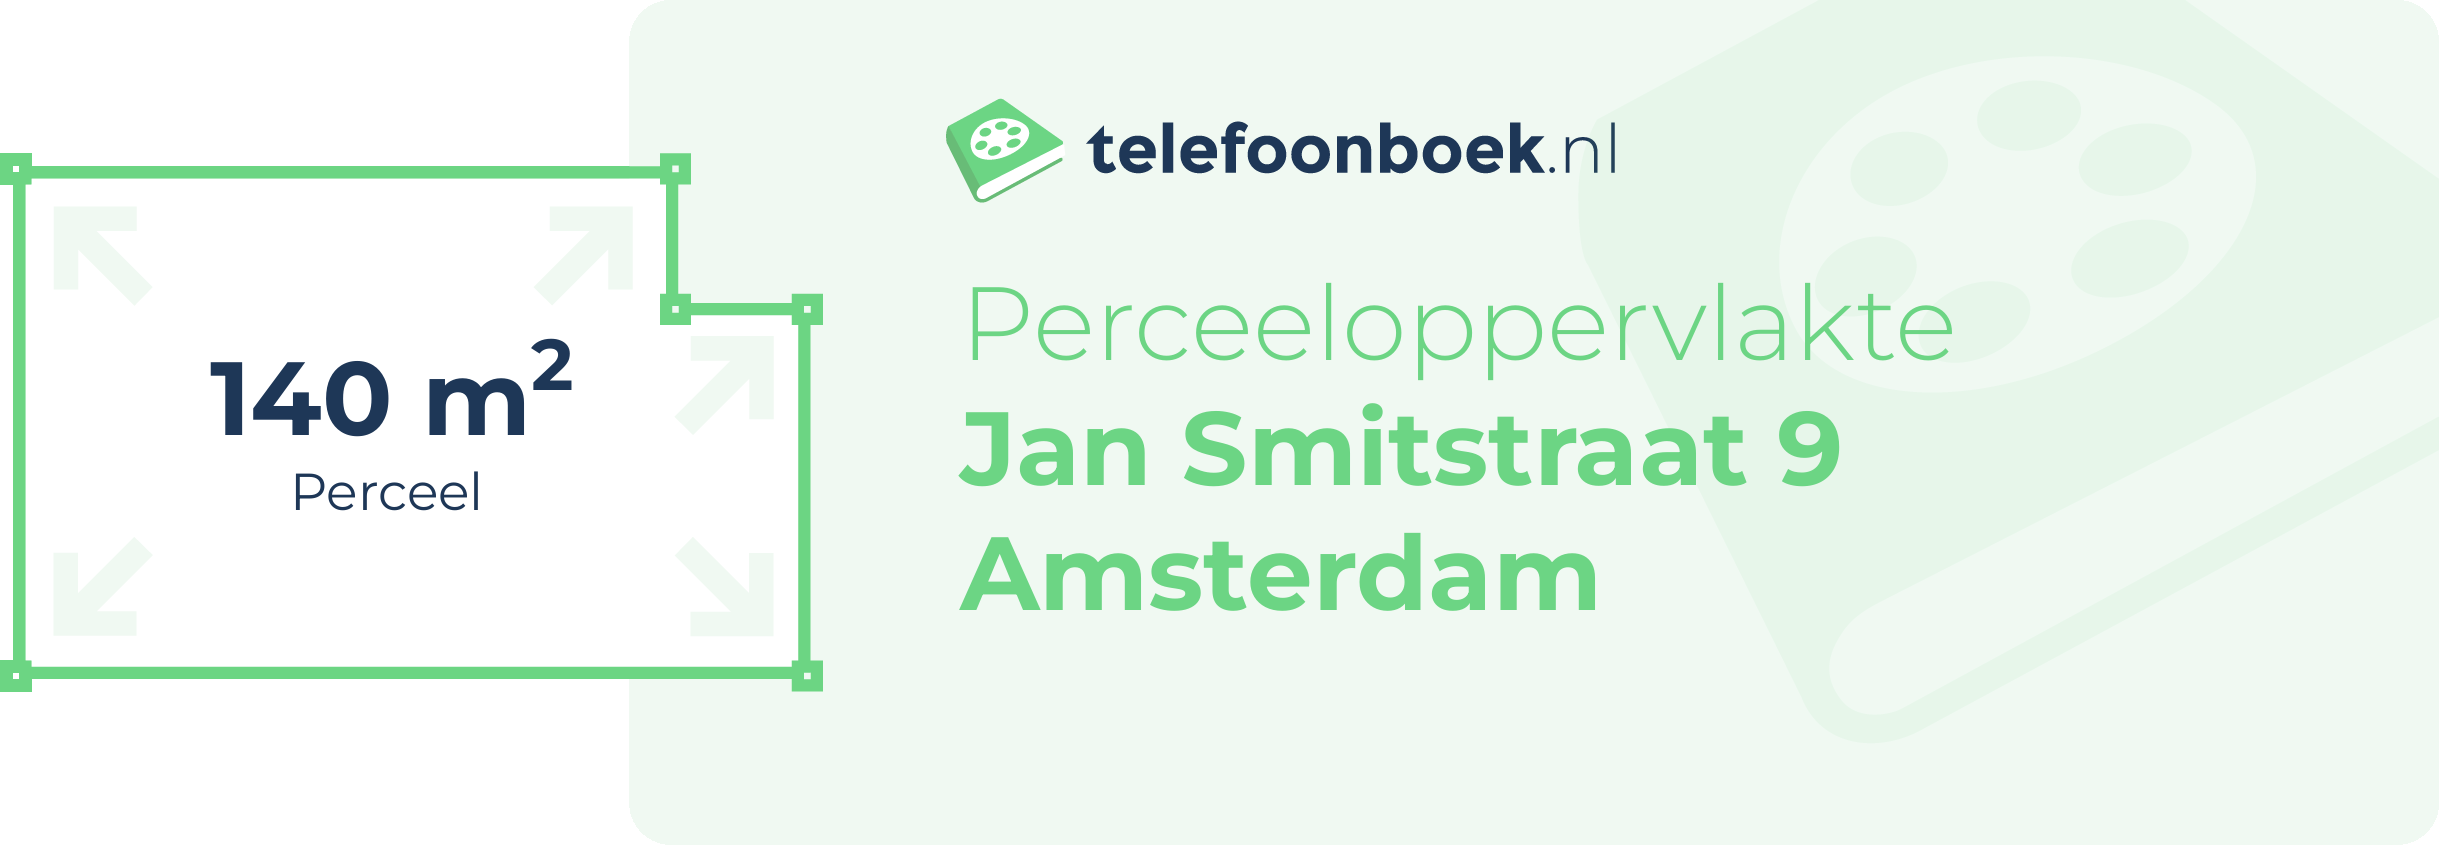 Perceeloppervlakte Jan Smitstraat 9 Amsterdam